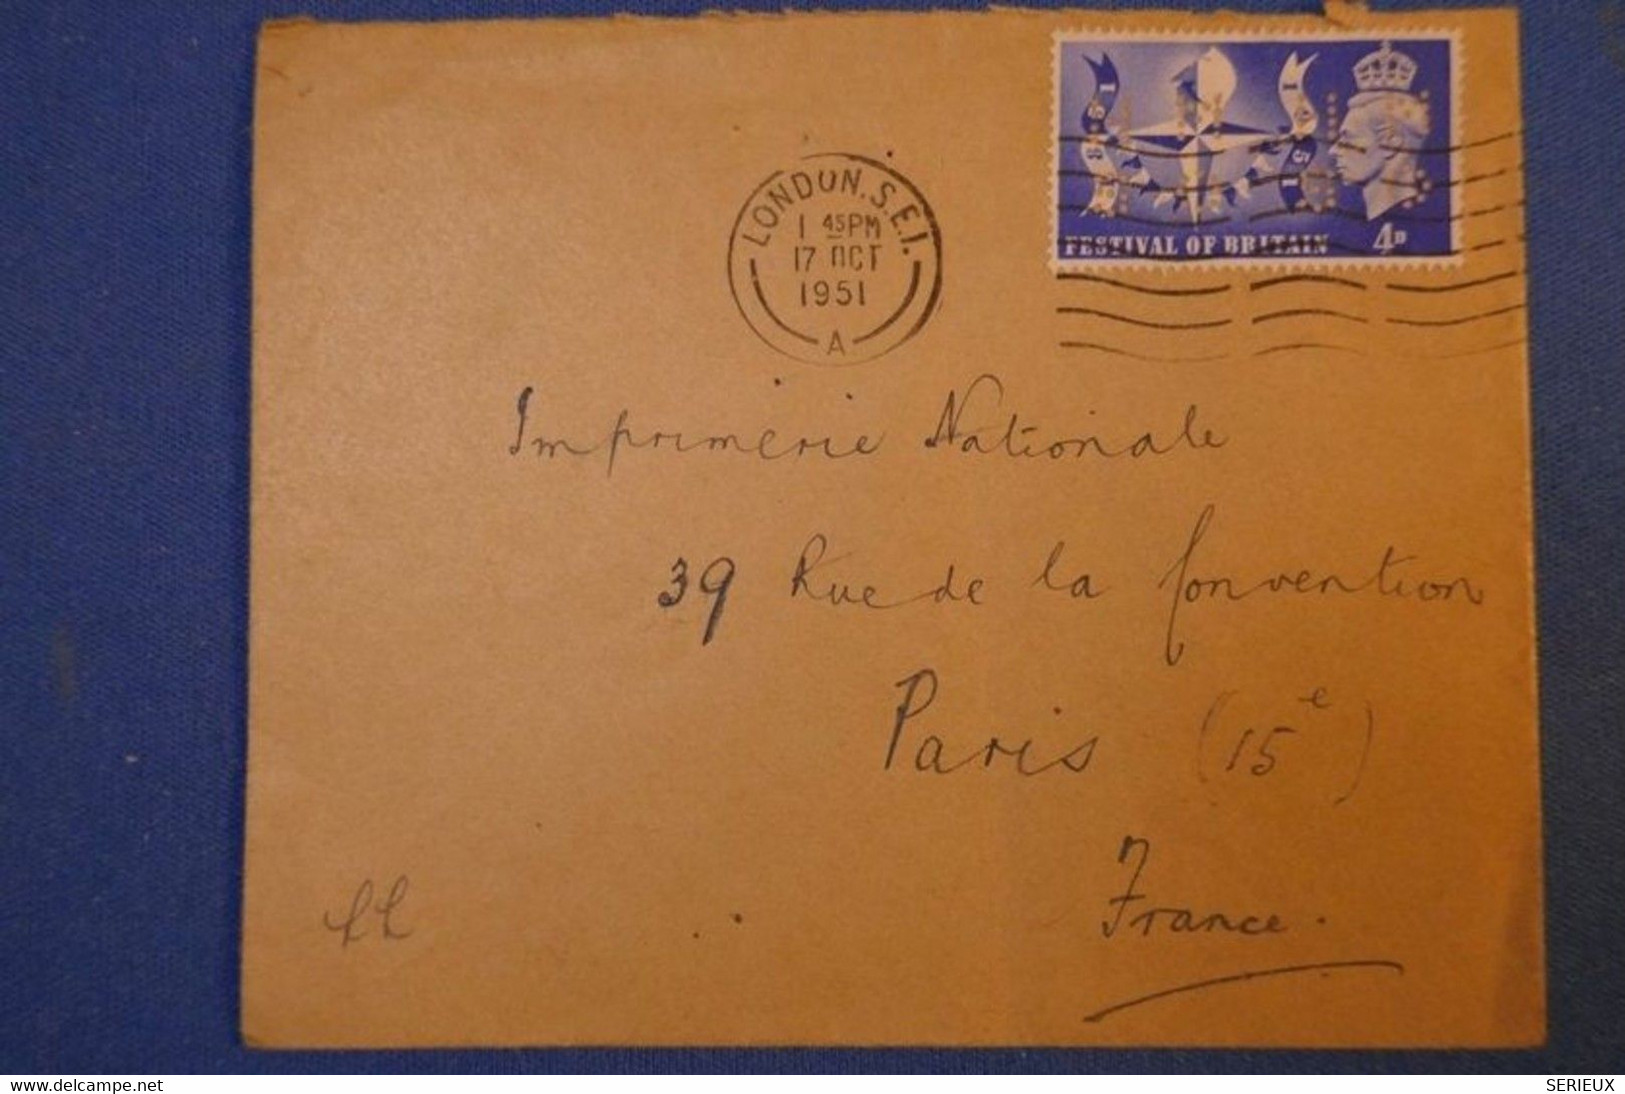 239 GRANDE BRETAGNE LETTRE 1951 DE LONDRES A PARIS R DE LA CONVENTION + TIMBRES PERFORATIONS PERFORATED - Covers & Documents